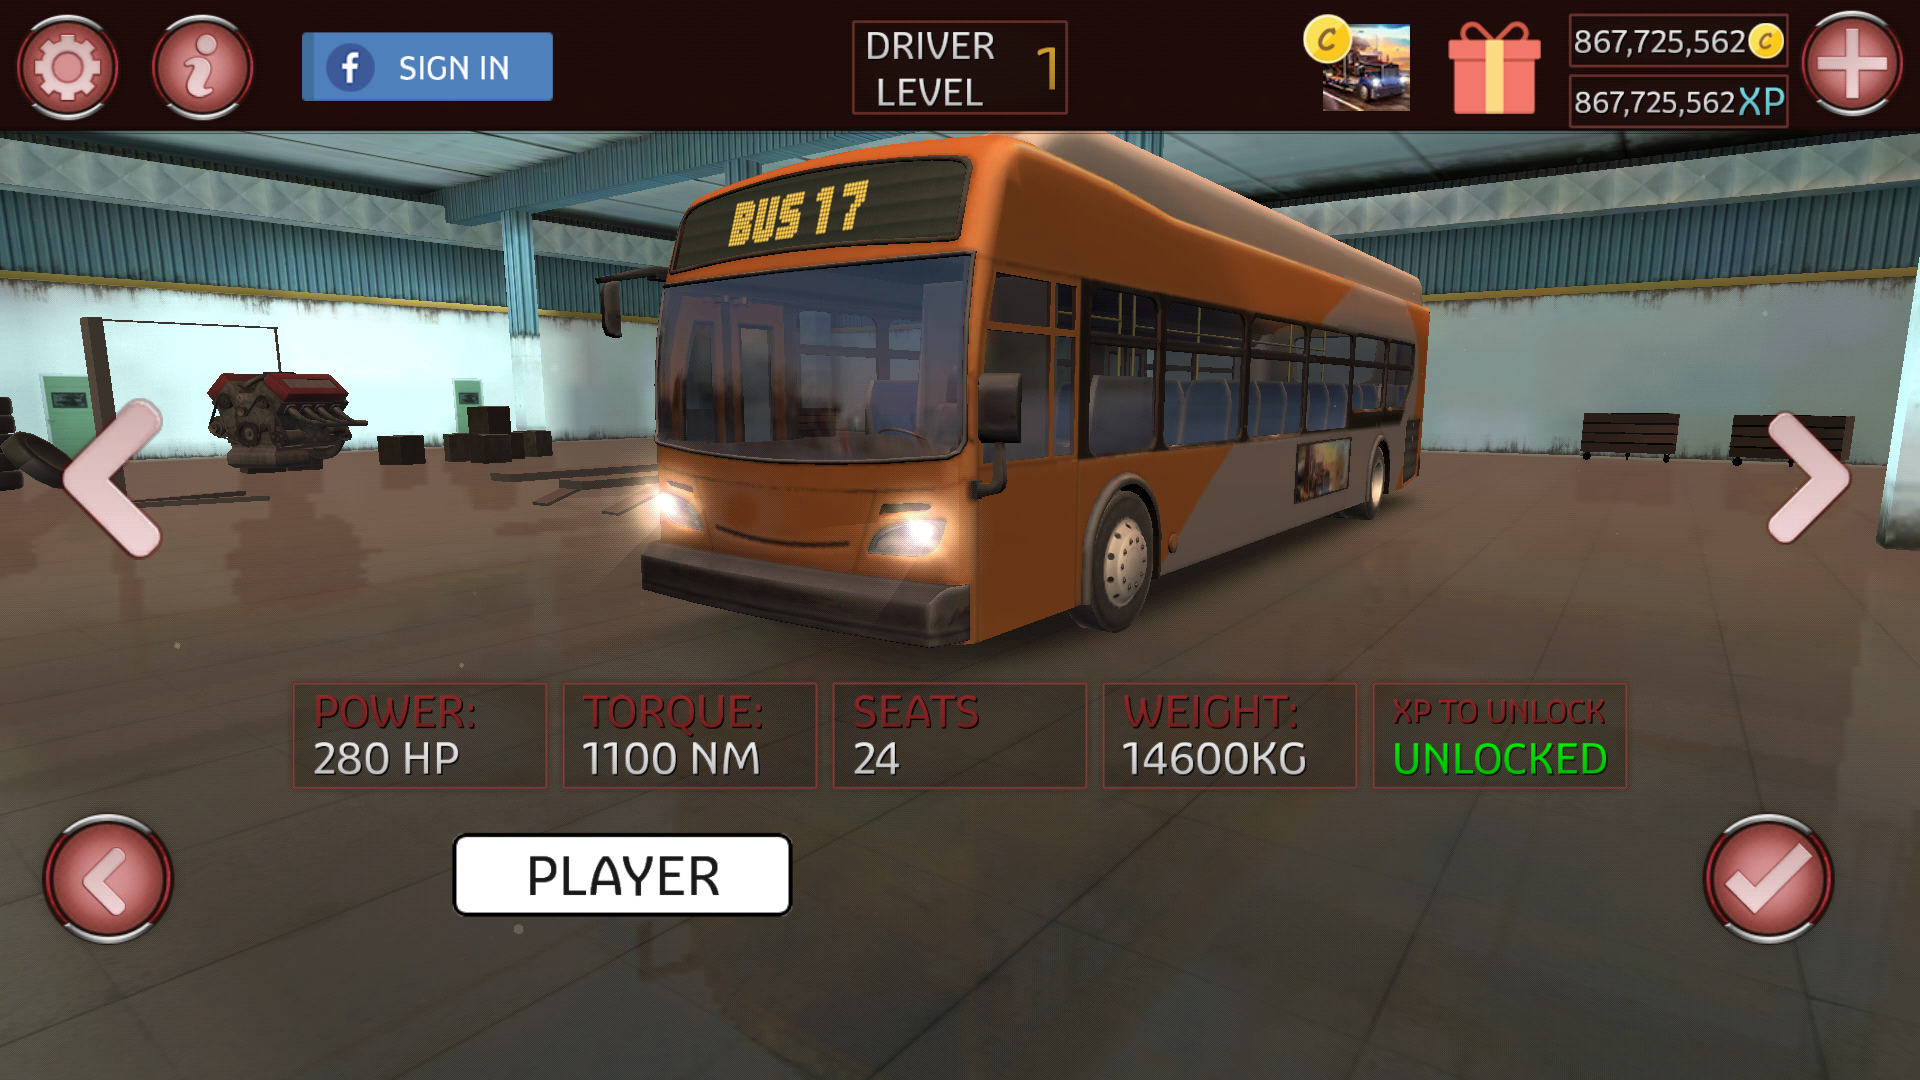 Автобус игра на много денег. Bus симулятор 2017. Автобусы игры Bus Simulator много денег. Игры про русские автобусы. Симулятор русского автобуса.